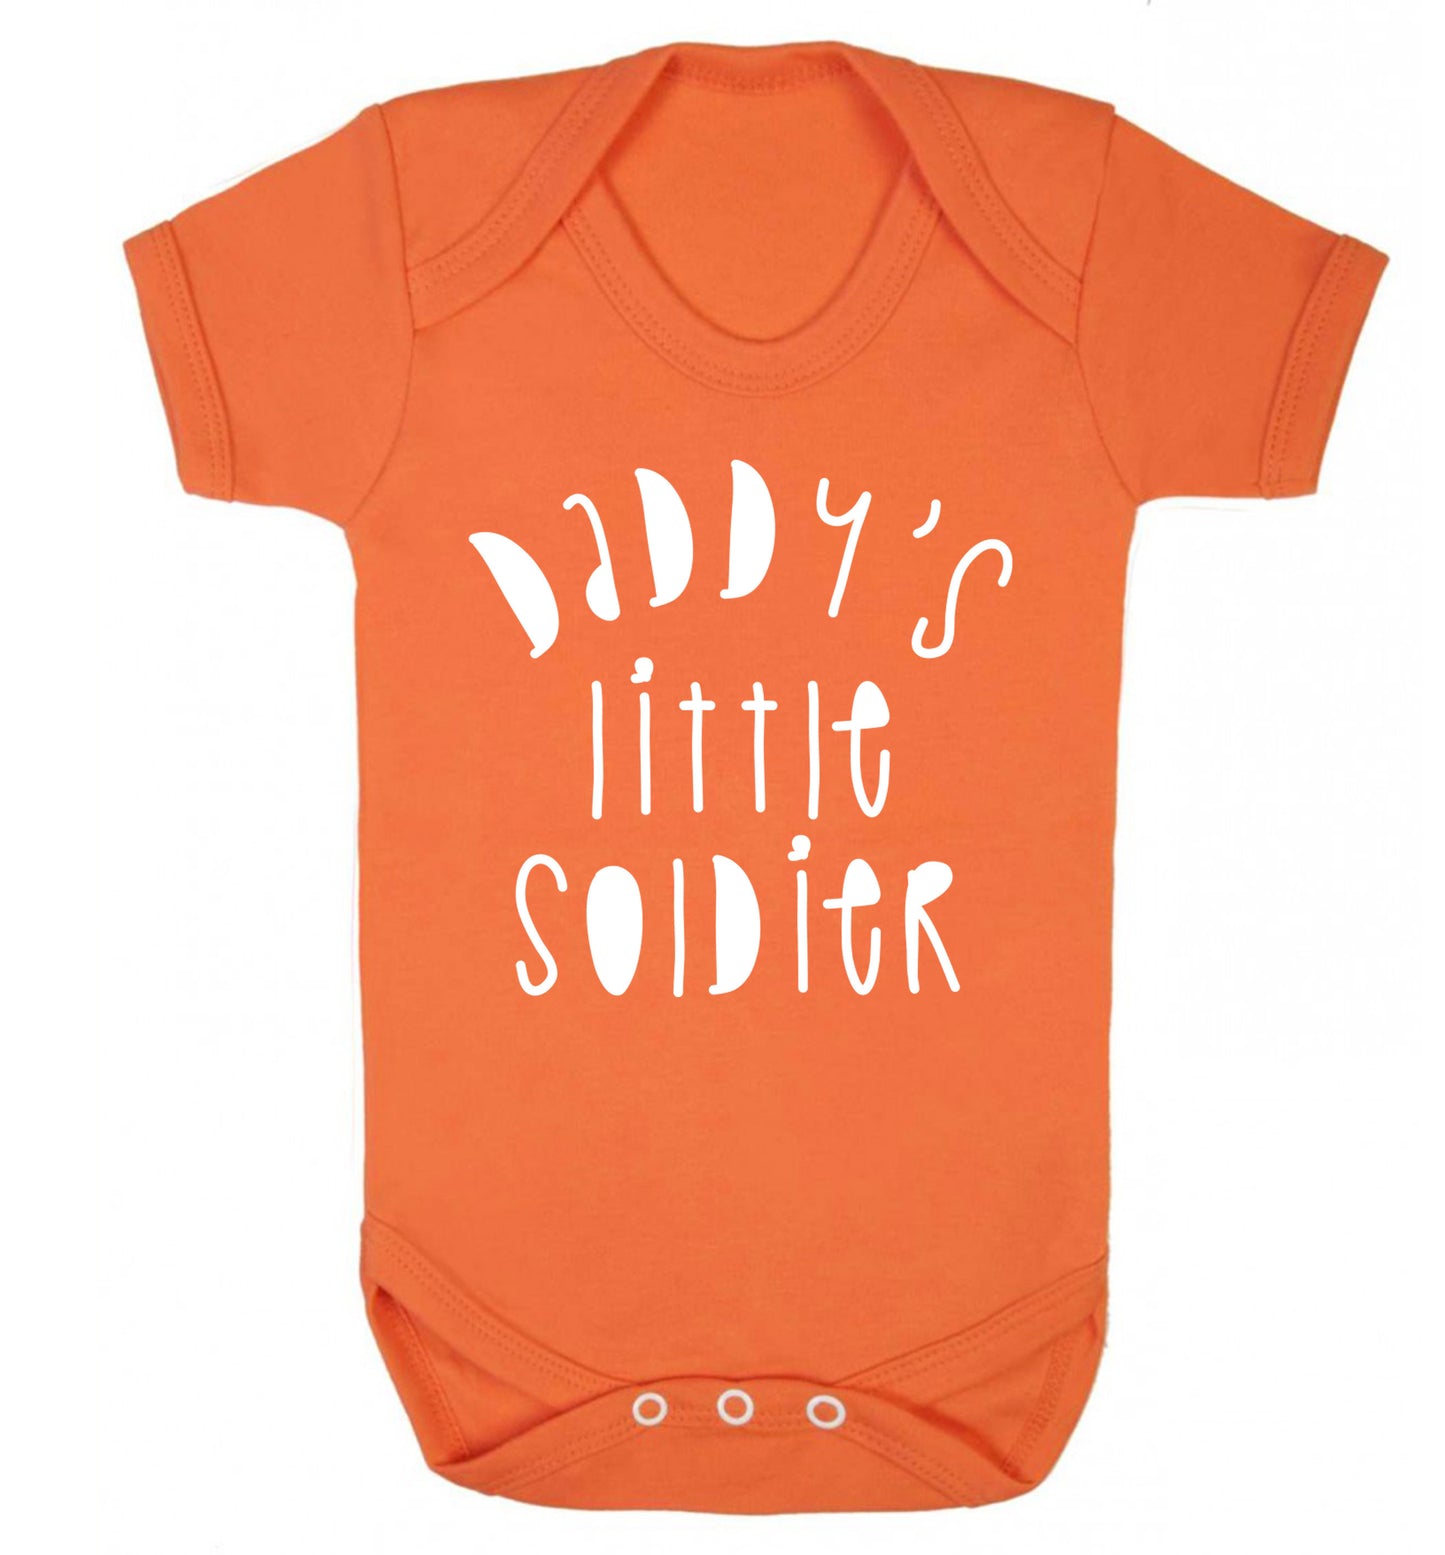 Daddy's little soldier Baby Vest orange 18-24 months